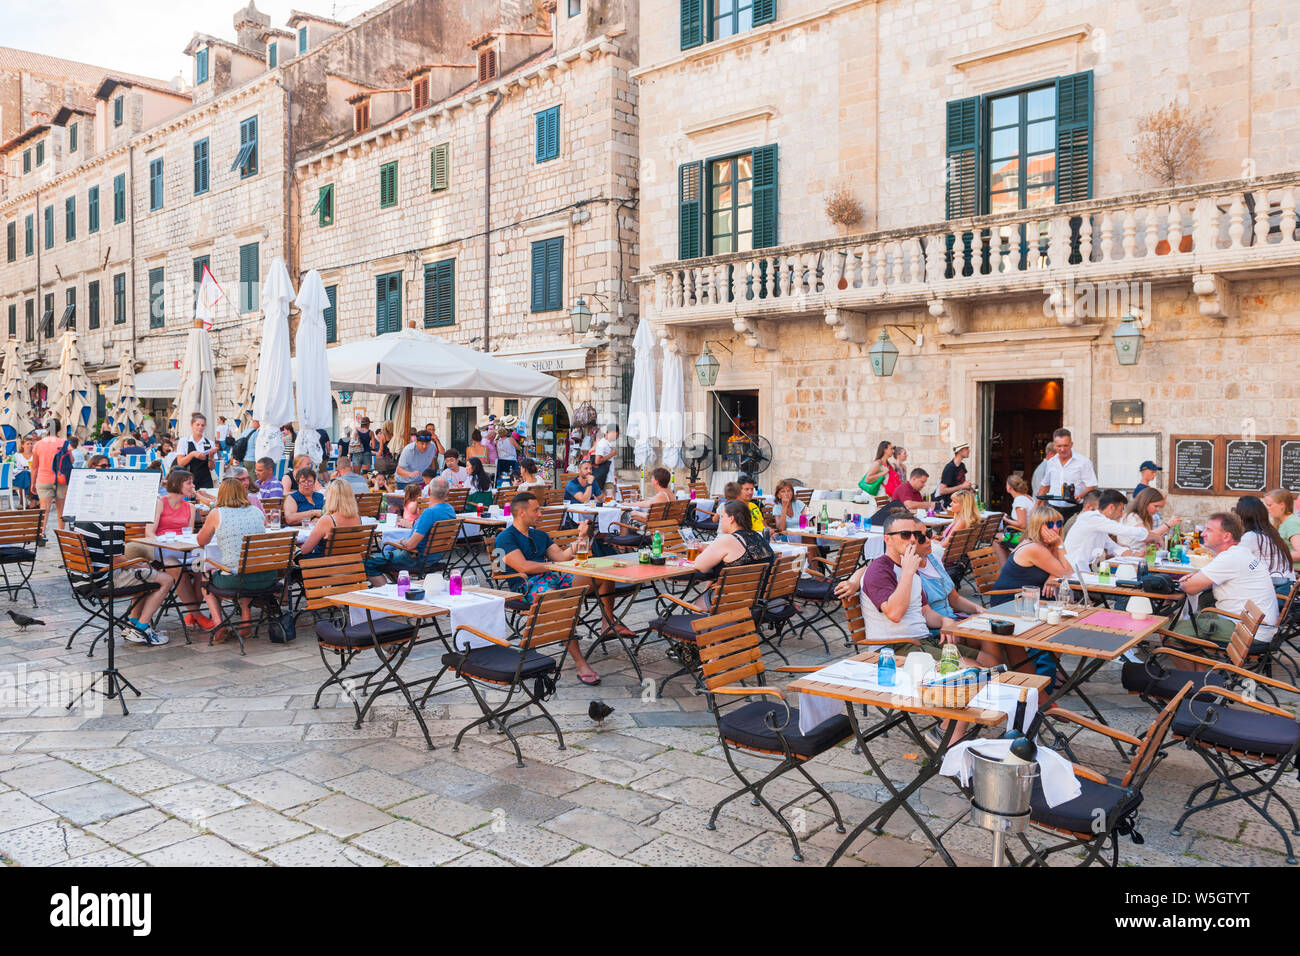 Les restaurants de la vieille ville, site du patrimoine mondial de l'UNESCO, Dubrovnik, Croatie, Europe Banque D'Images